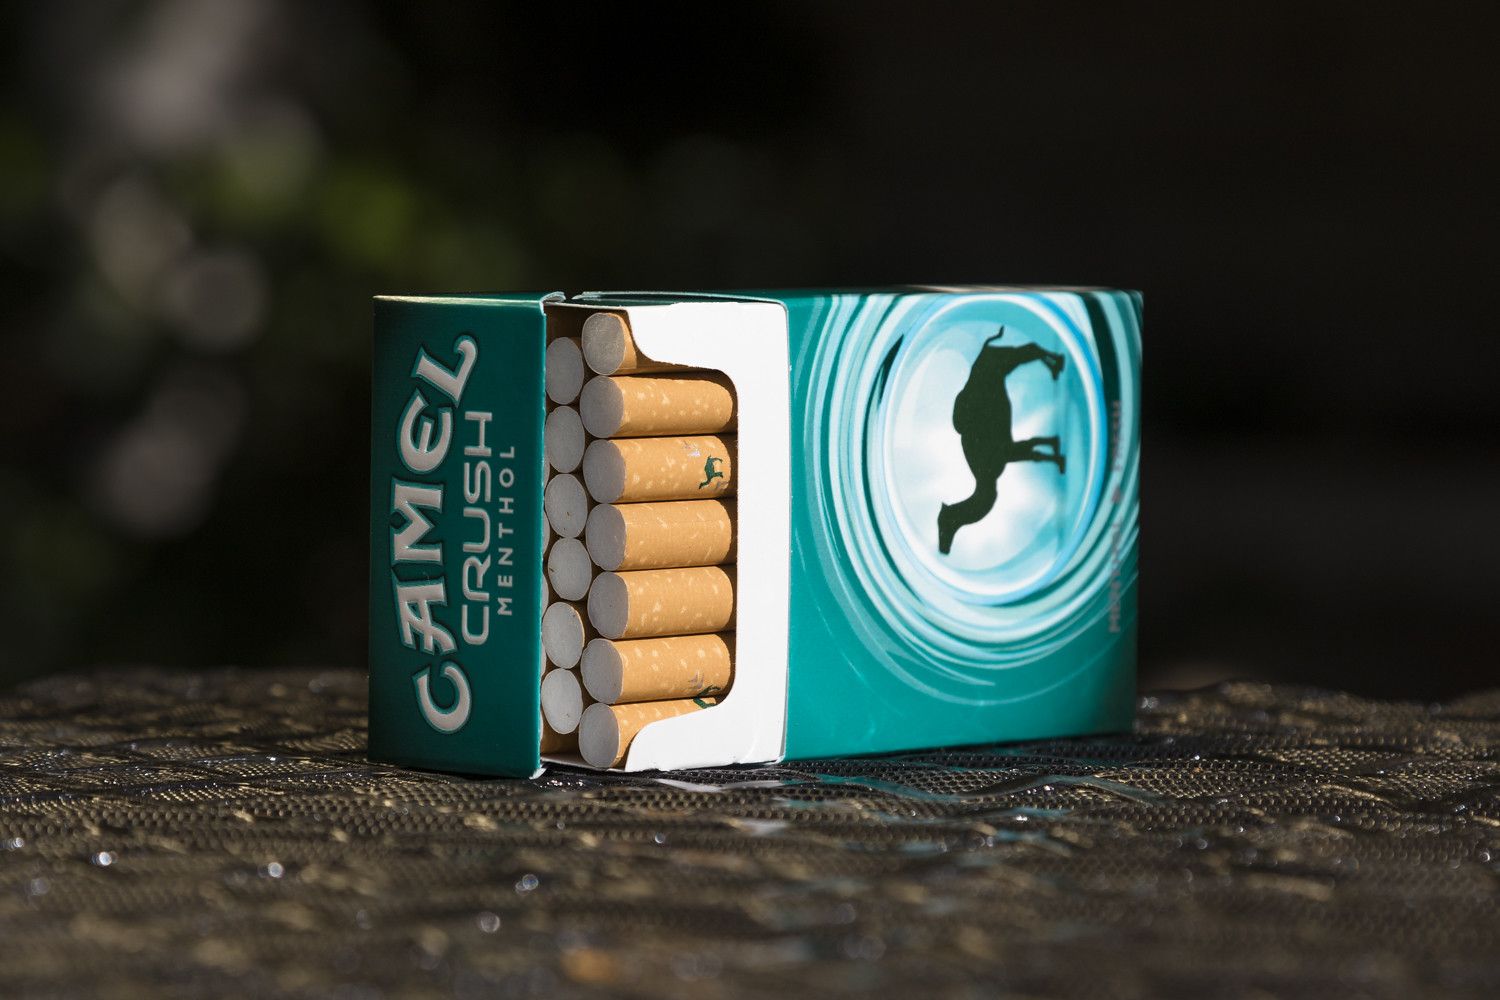 V Česku i celé EU začal platit zákaz prodeje mentolových cigaret. Až příliš lákaly mladé ke kouření